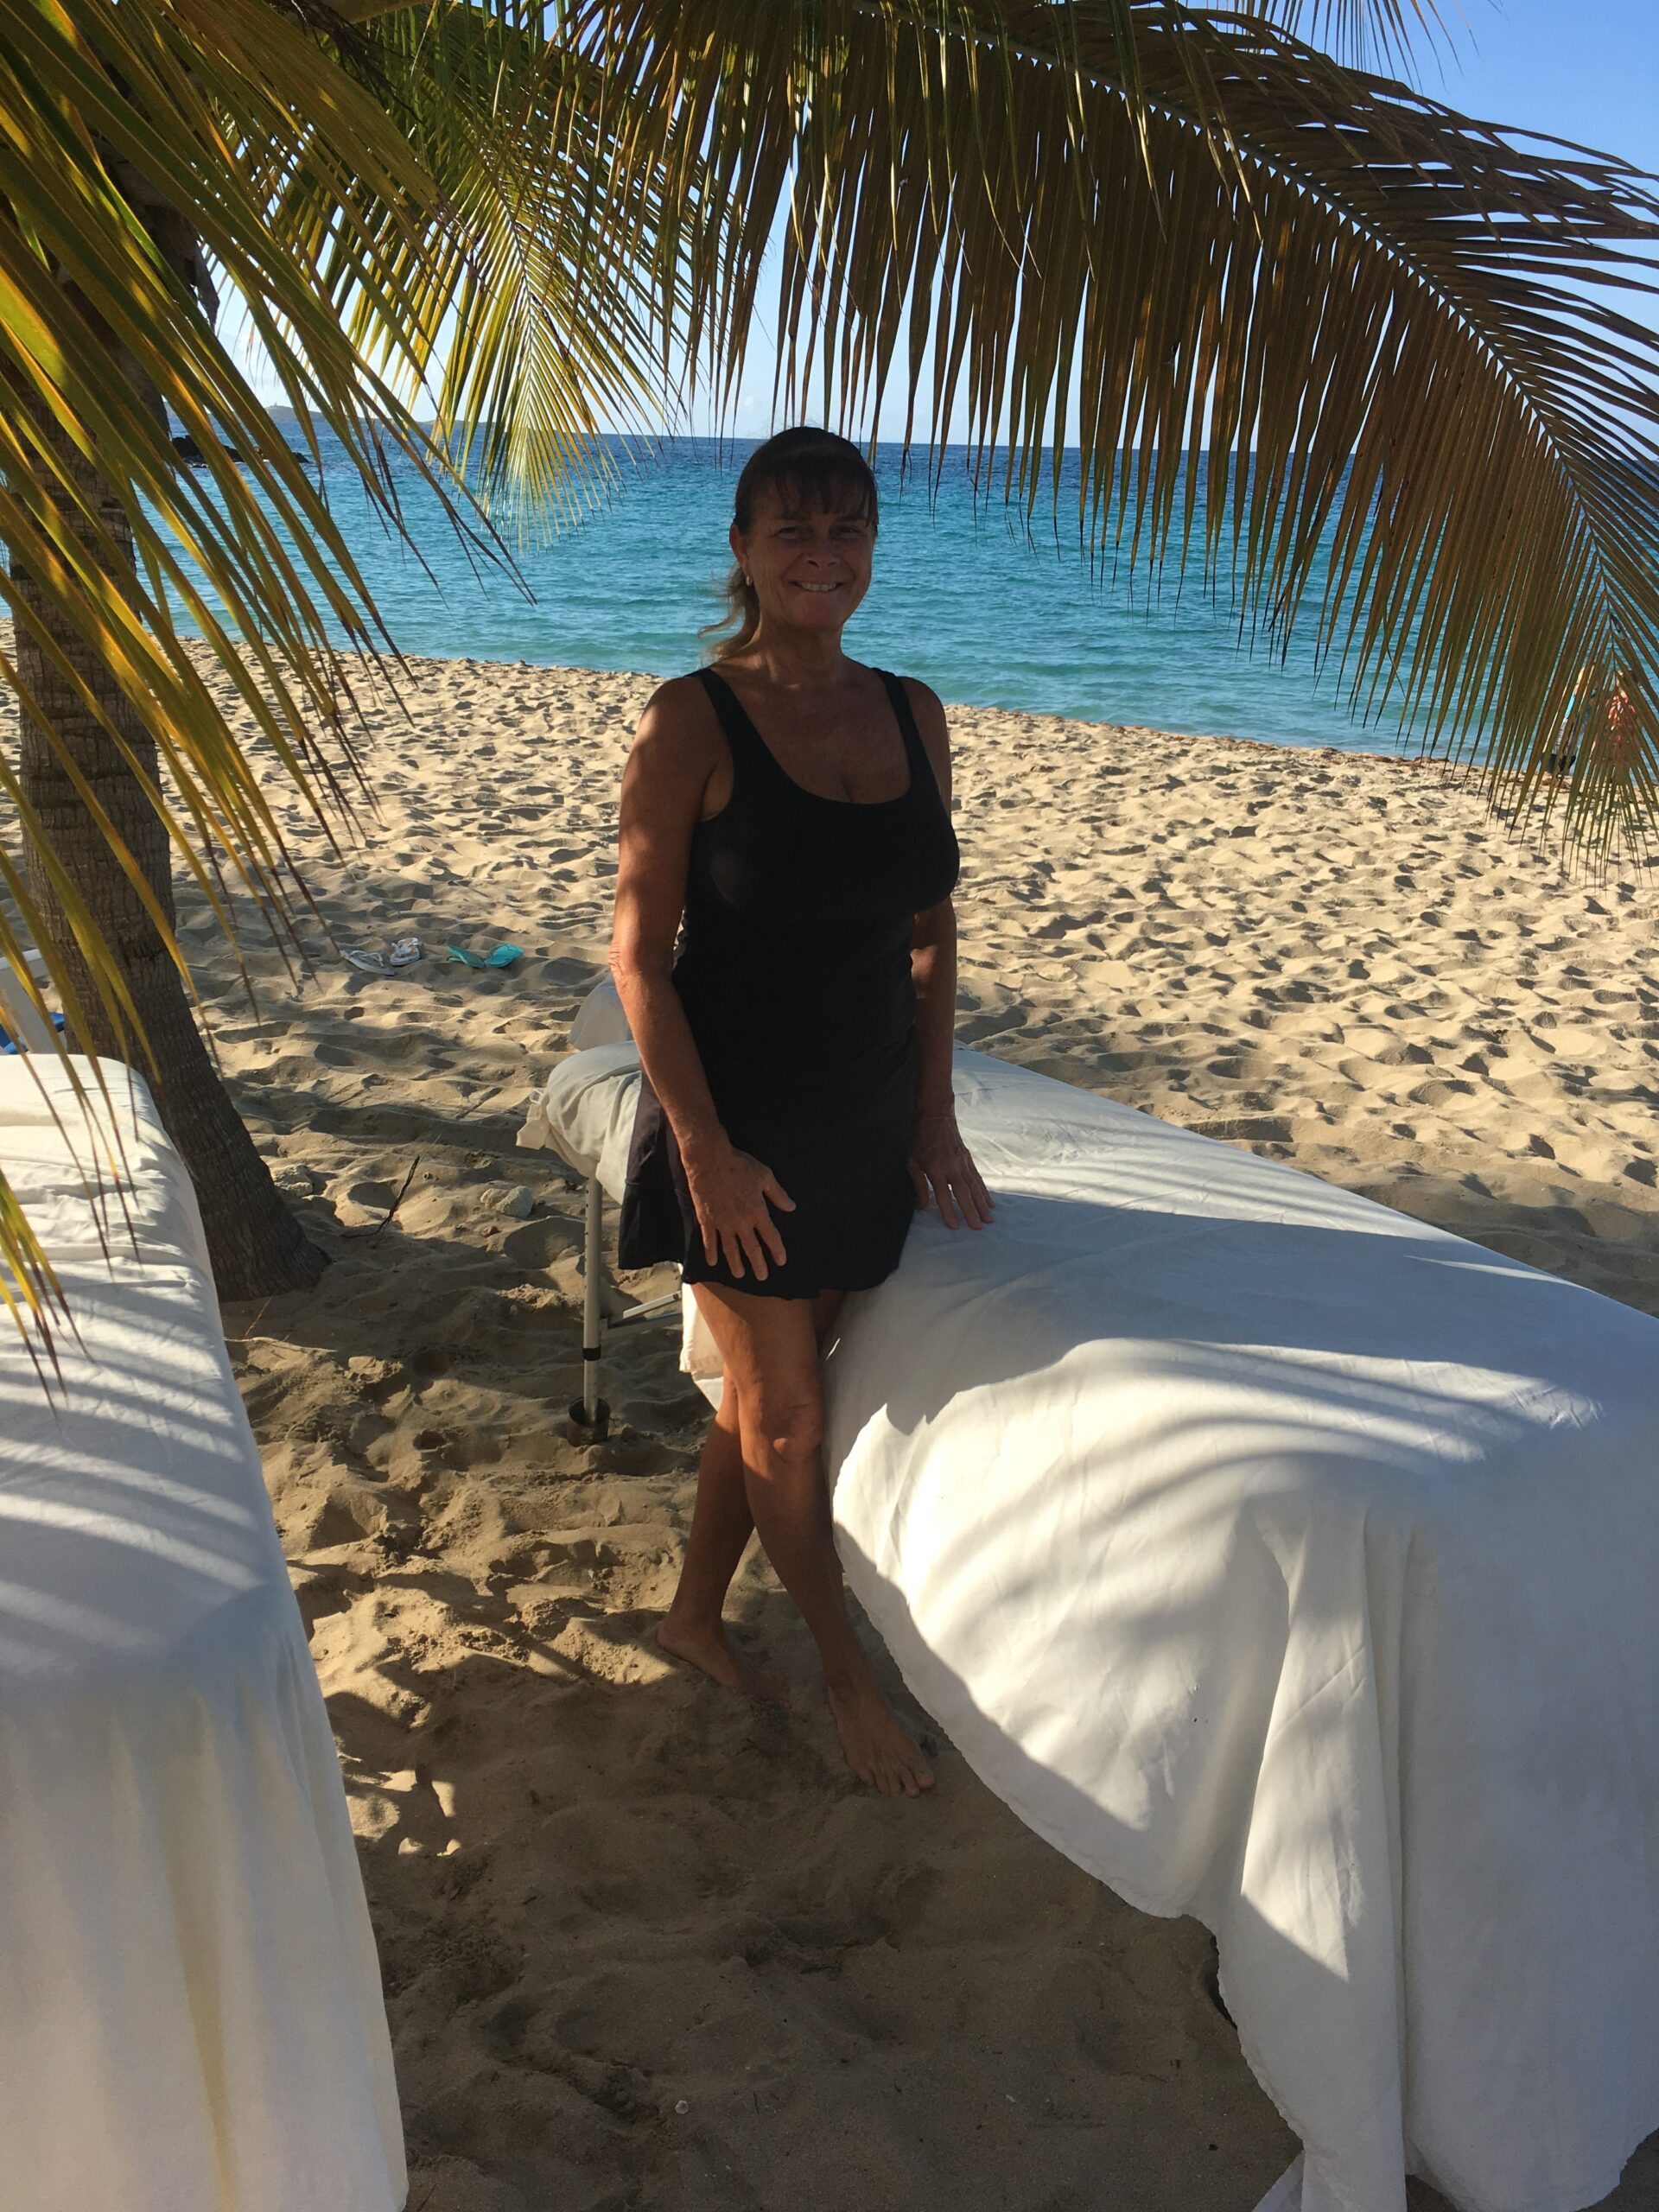 Beach massages for honeymooners with Jill Scott